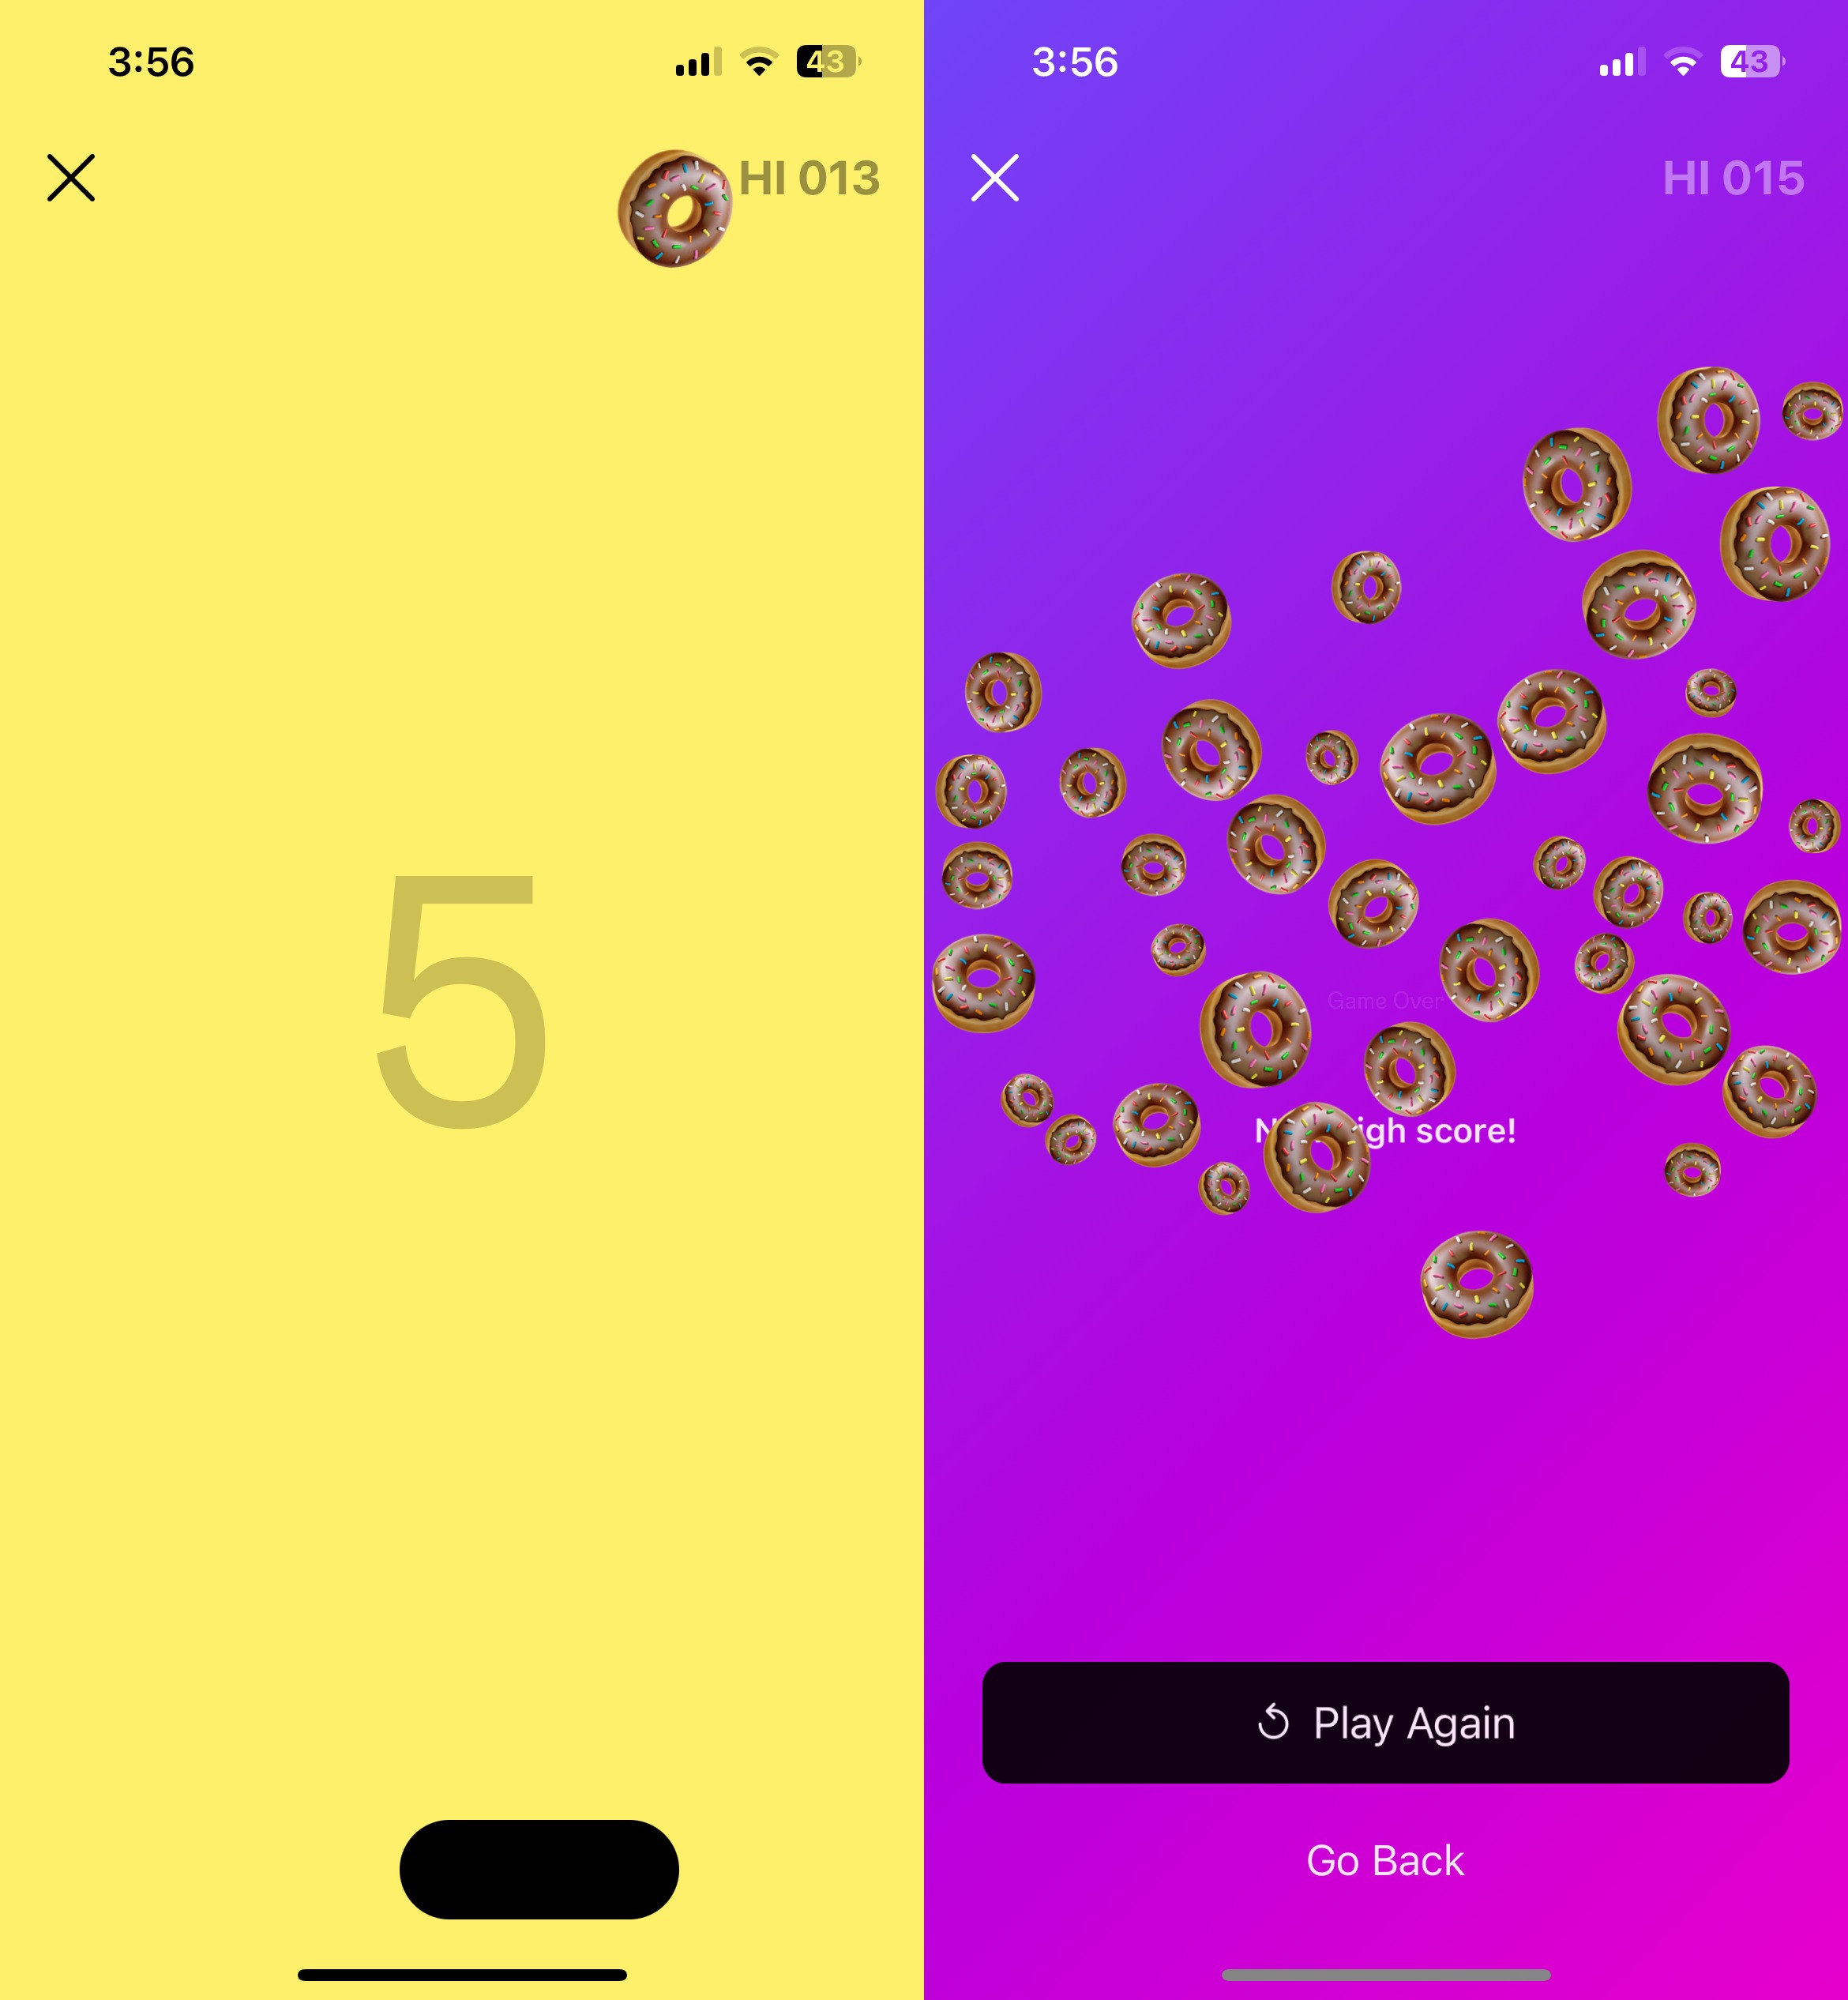 Zwei nebeneinander liegende Screenshots des versteckten Spiels von Instagram.  Das erste Bild zeigt ein Donut-Emoji, das von einem Paddel abprallt.  Das zweite Bild zeigt das Spiel über dem Bildschirm.